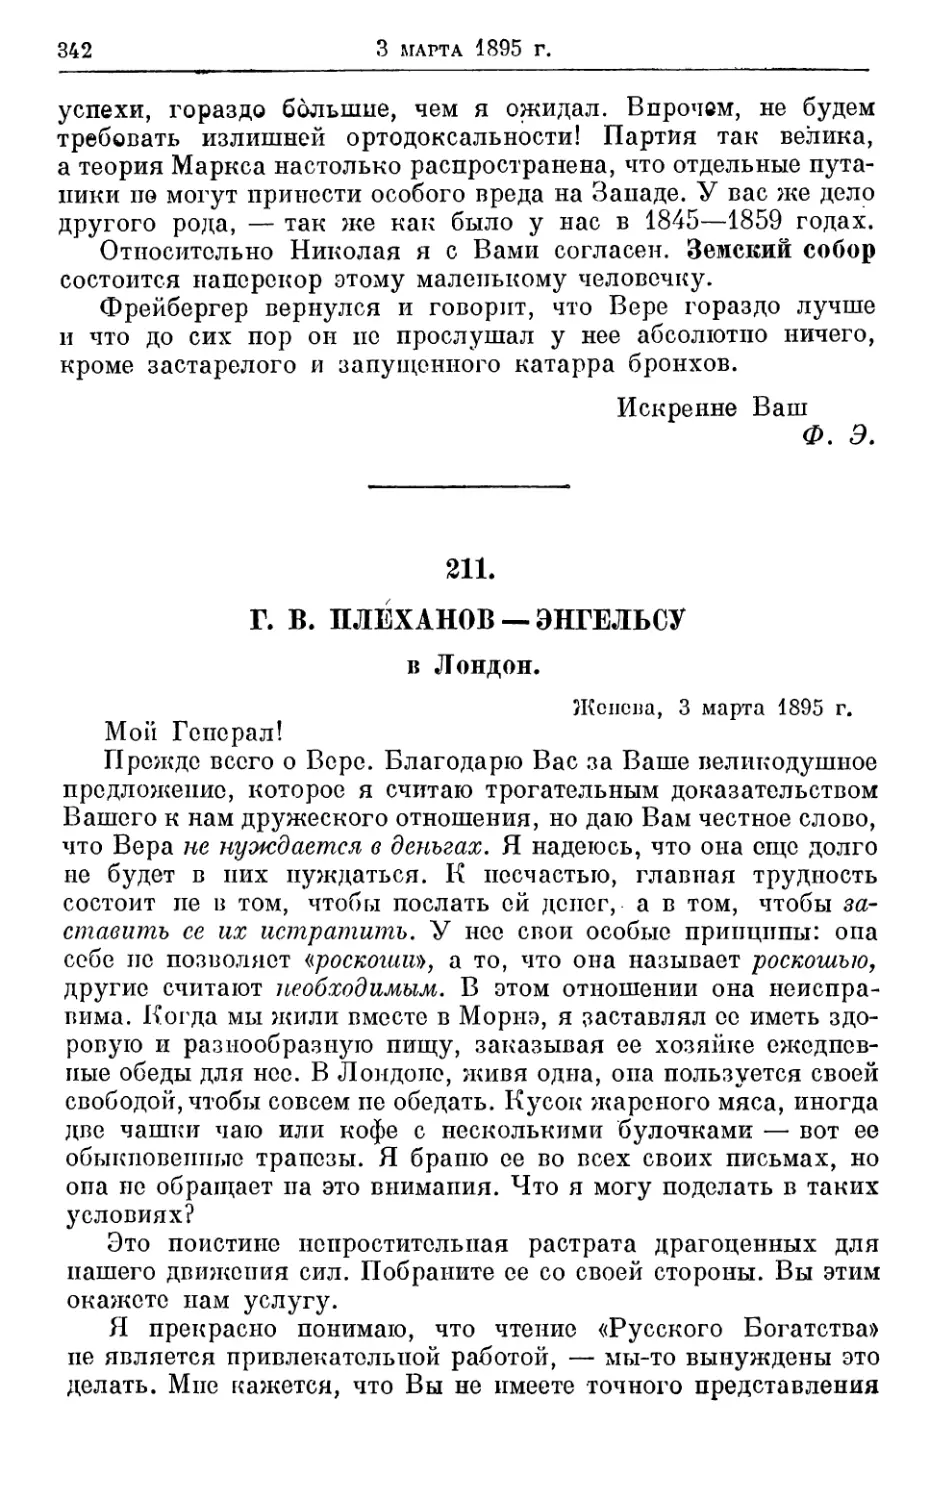 211. Плеханов— Энгельсу, 3 марта 1895г